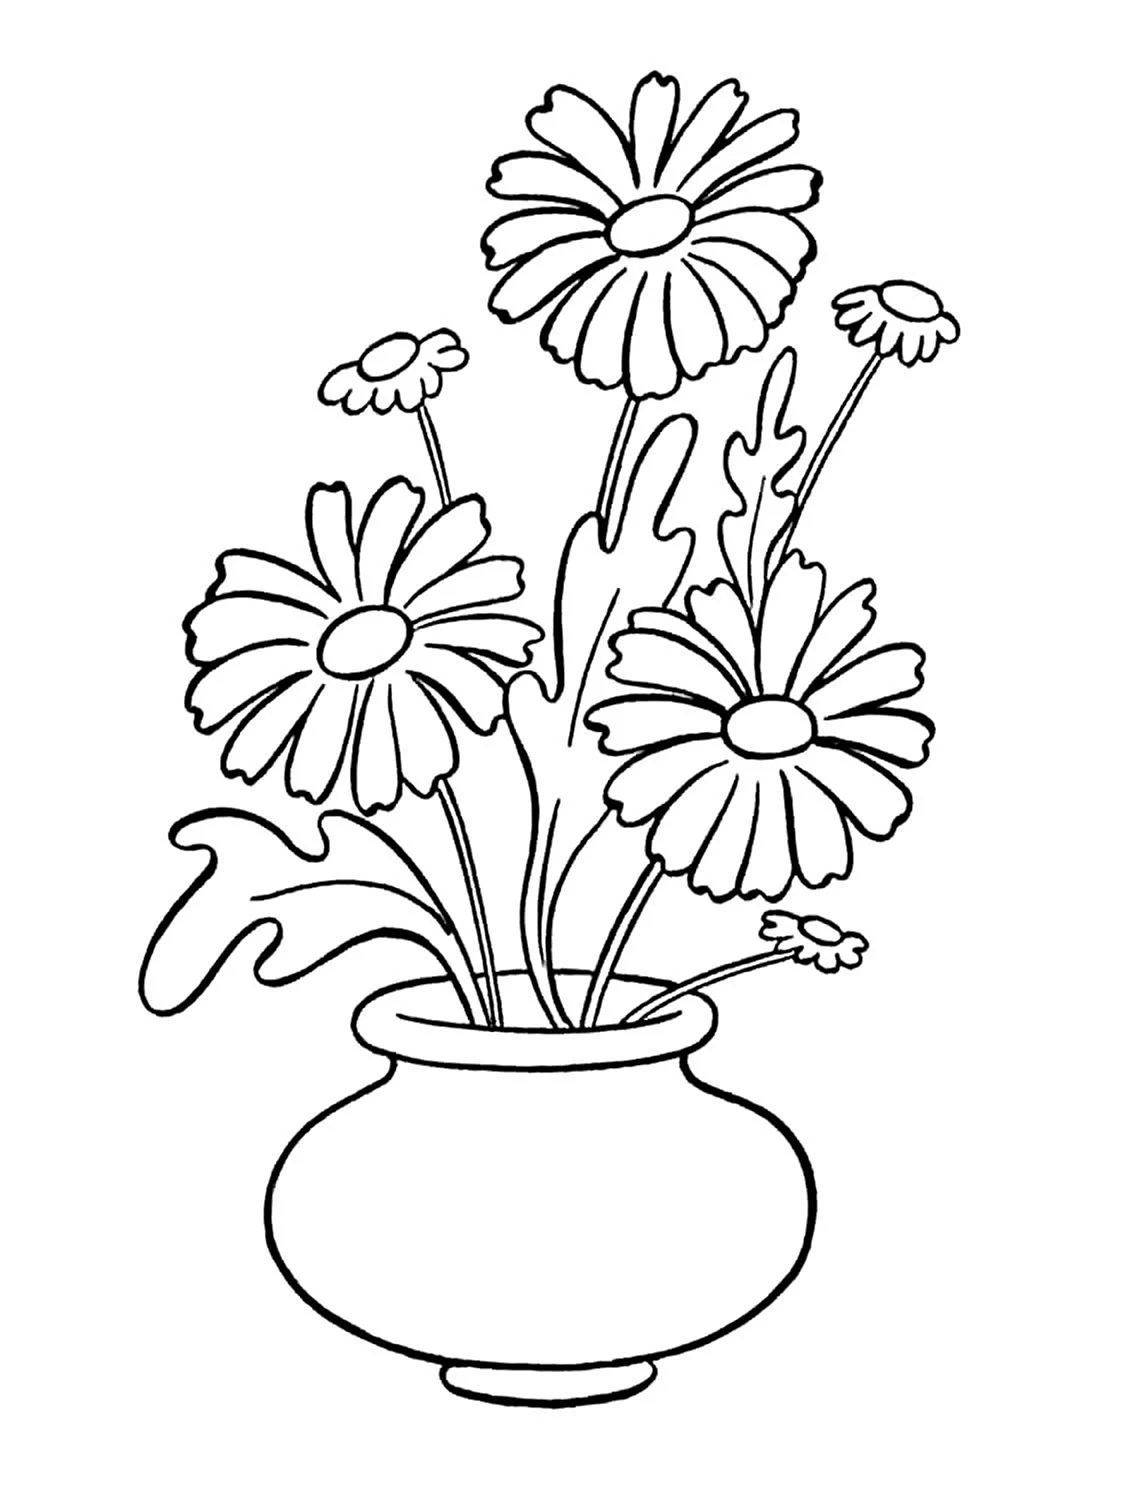 Рисунок вазы с цветами и листьями на ней